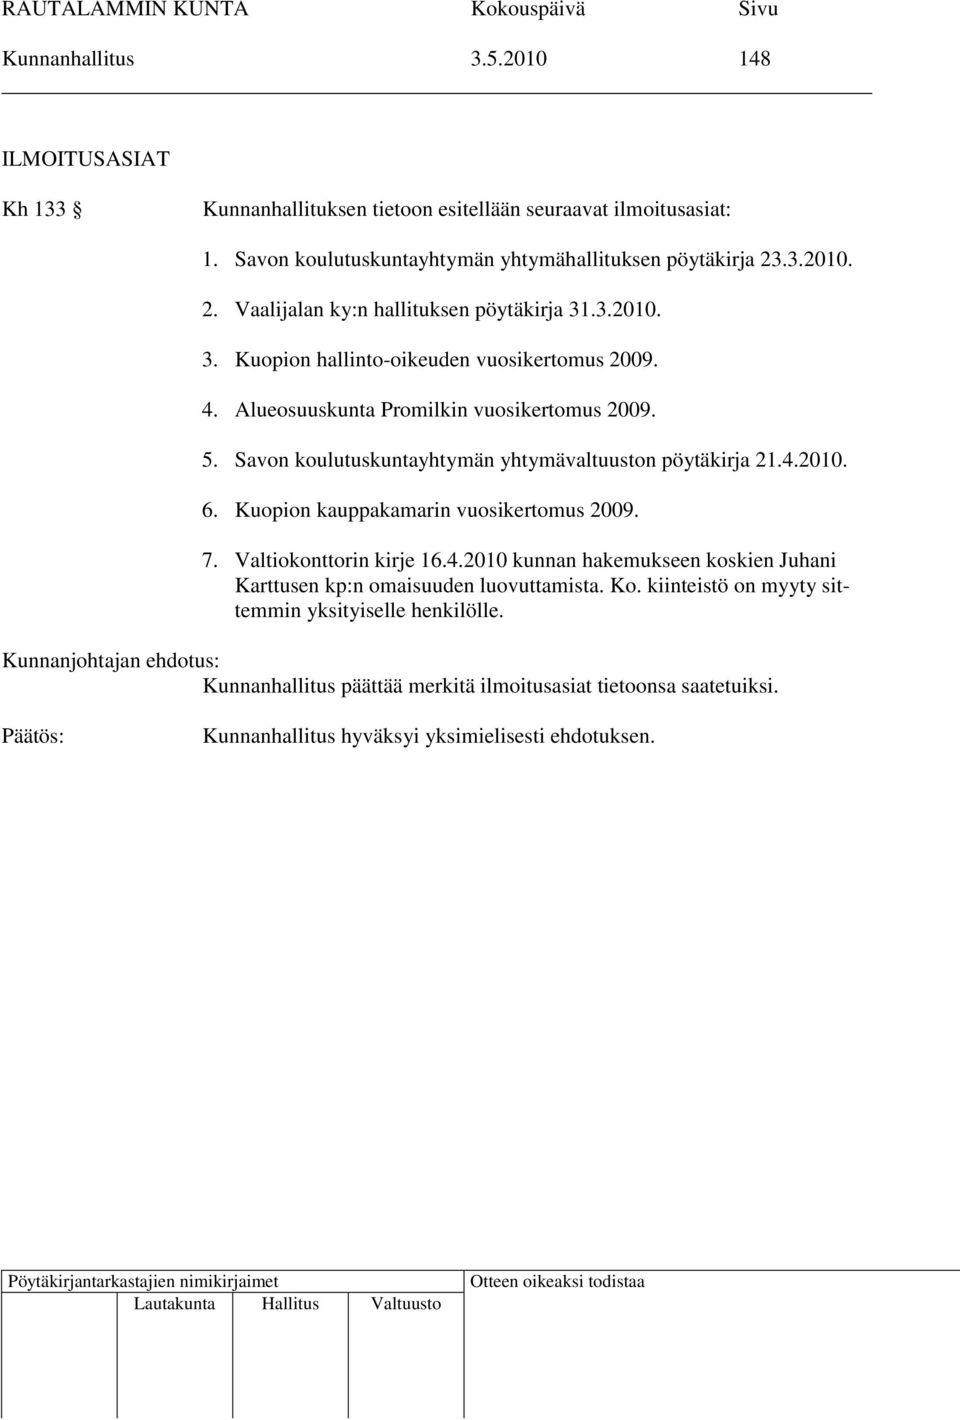 Alueosuuskunta Promilkin vuosikertomus 2009. 5. Savon koulutuskuntayhtymän yhtymävaltuuston pöytäkirja 21.4.2010. 6. Kuopion kauppakamarin vuosikertomus 2009. 7.